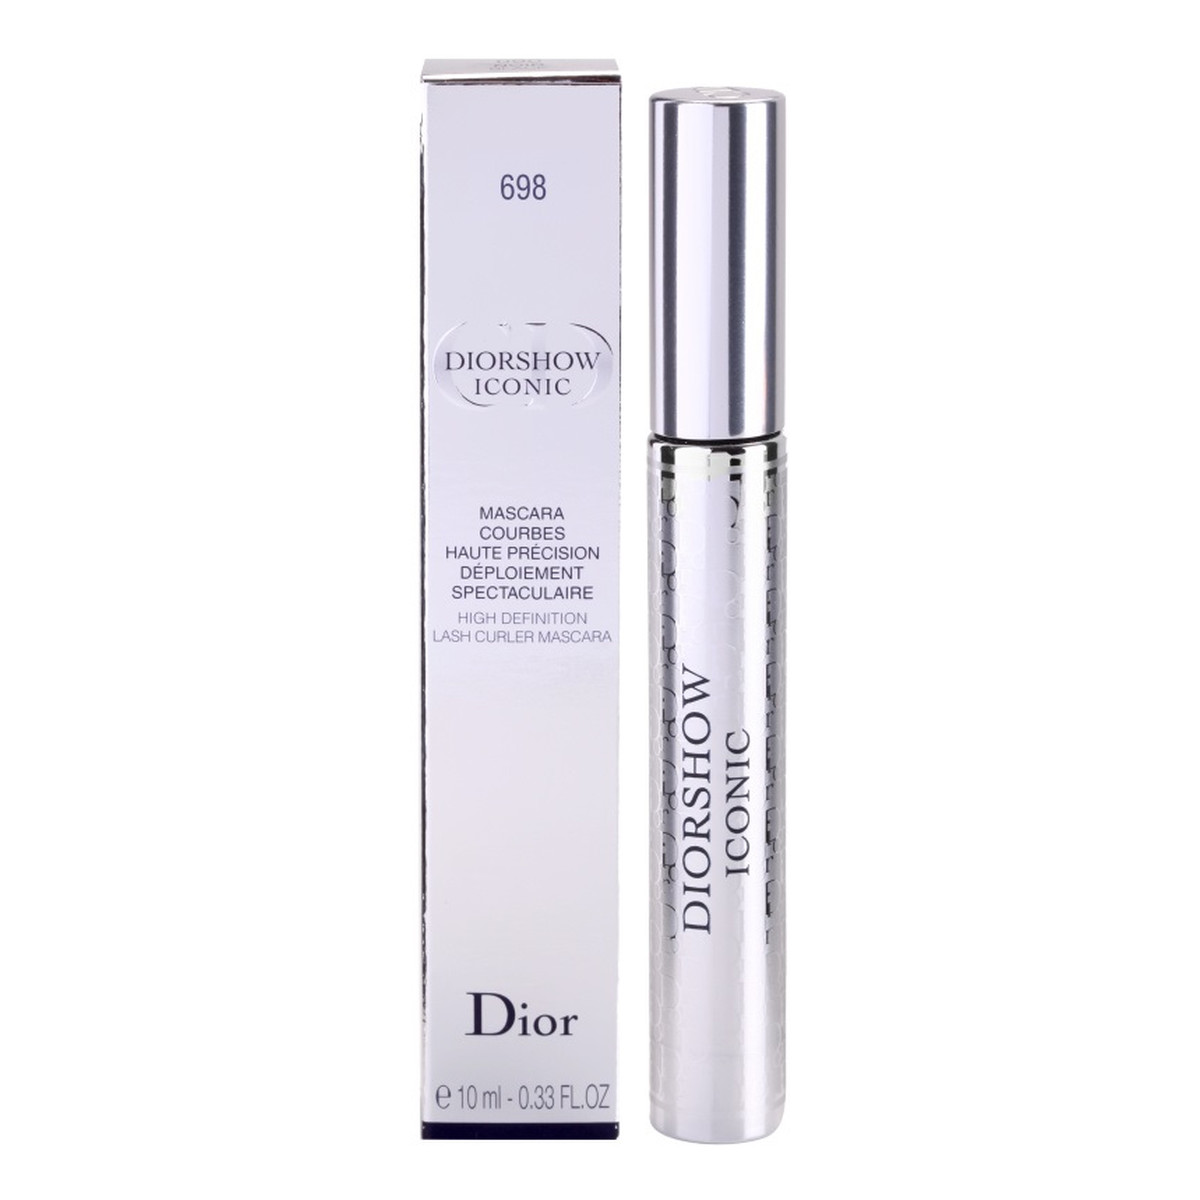 Dior Diorshow Iconic Tusz wydłużający i podkręcający rzęsy (High Definition Lash Curler Mascara) 10ml